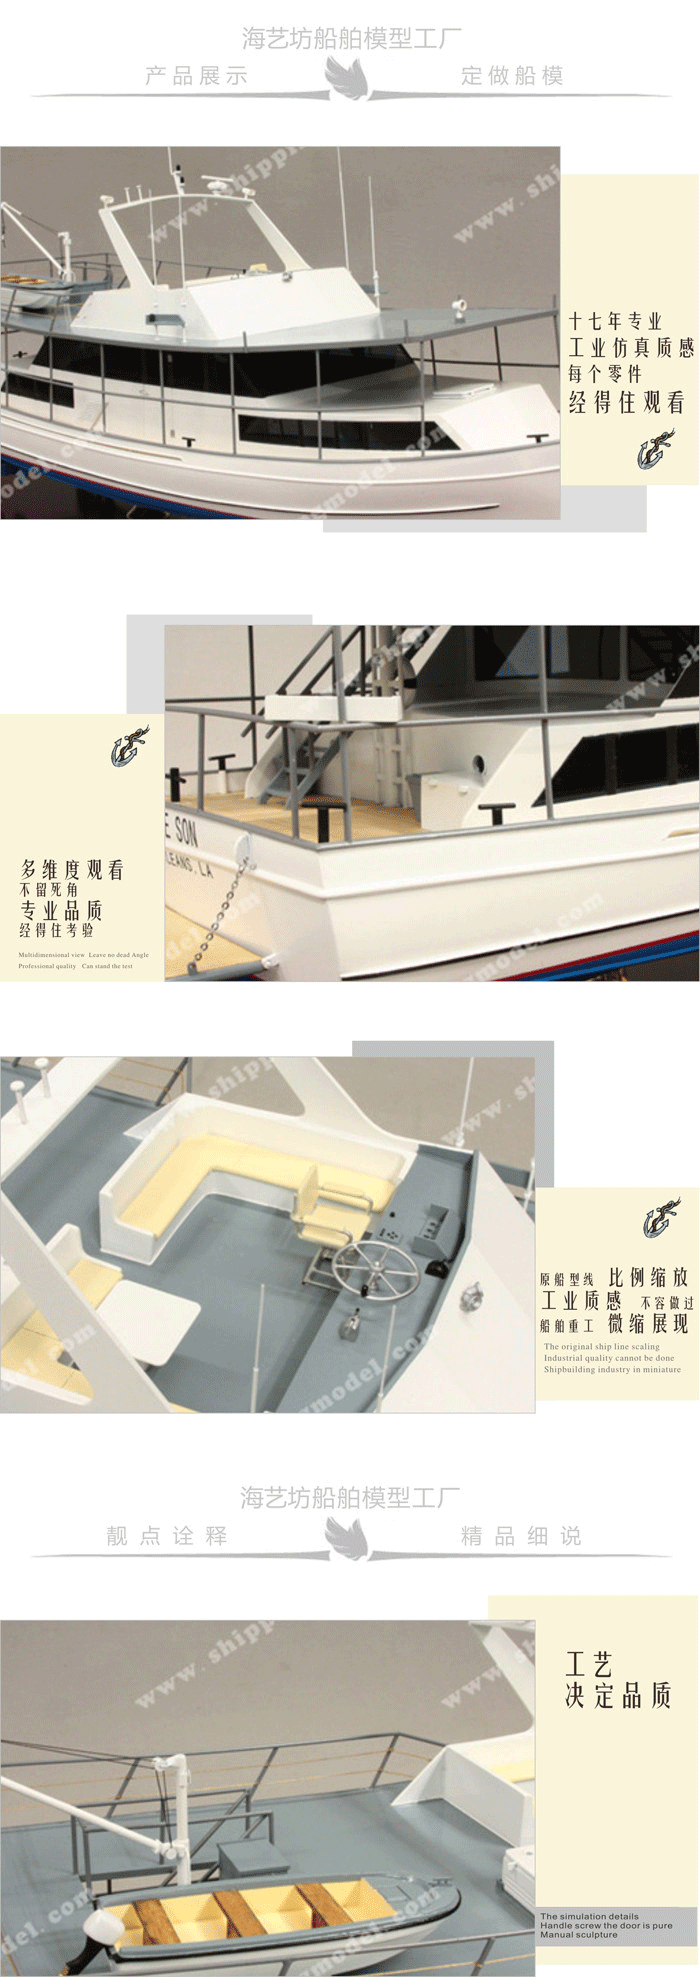 60cm游艇模型定制B